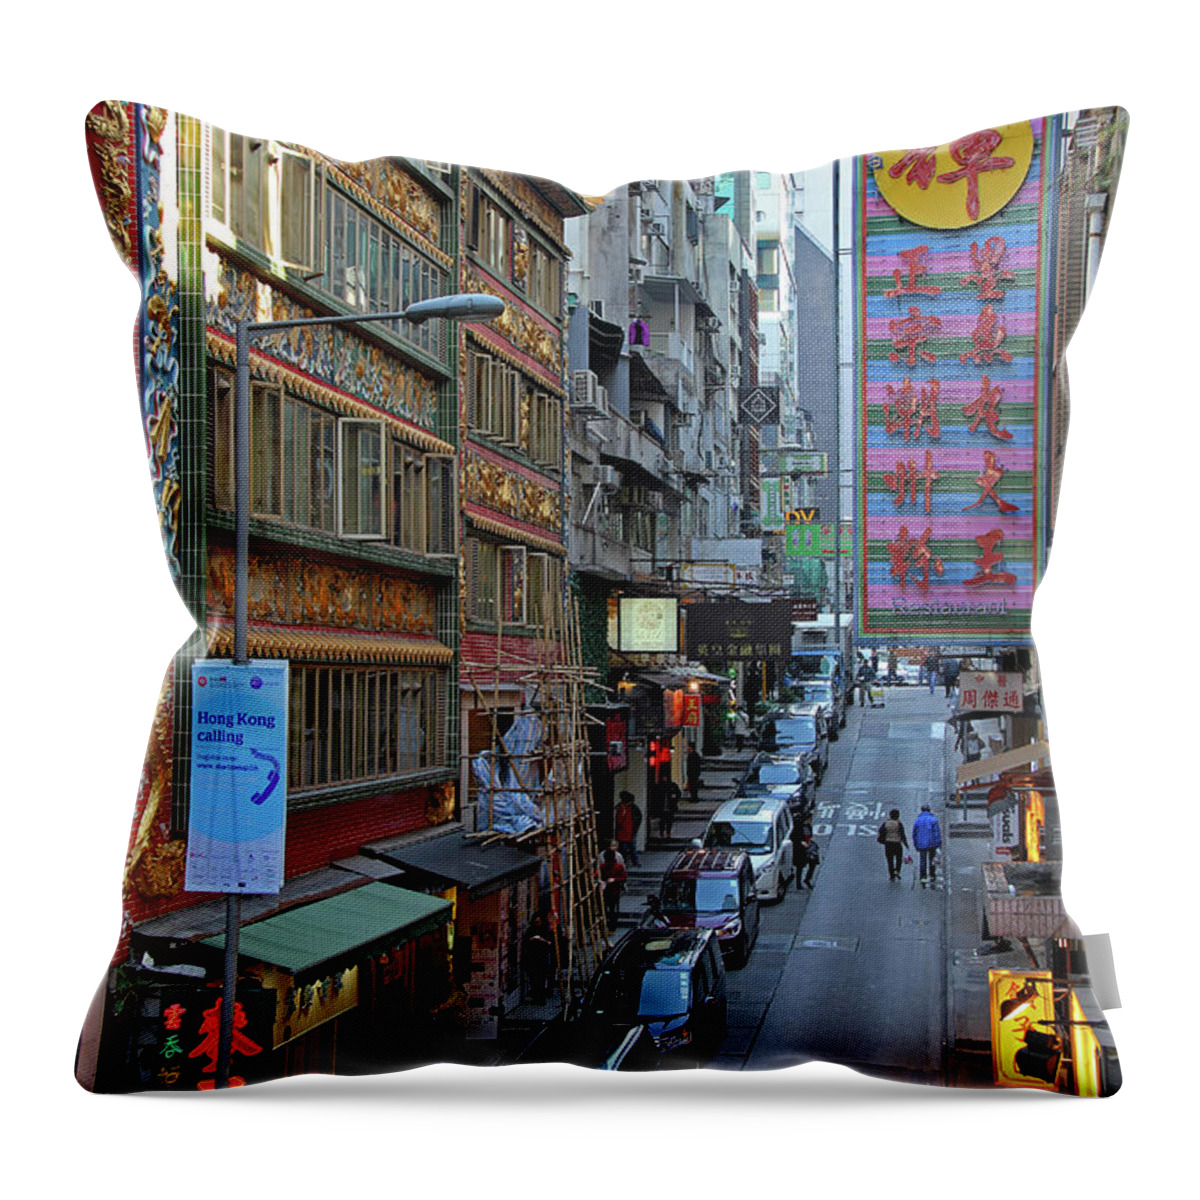 Hong Kong Throw Pillow featuring the photograph Hong Kong China by Richard Krebs